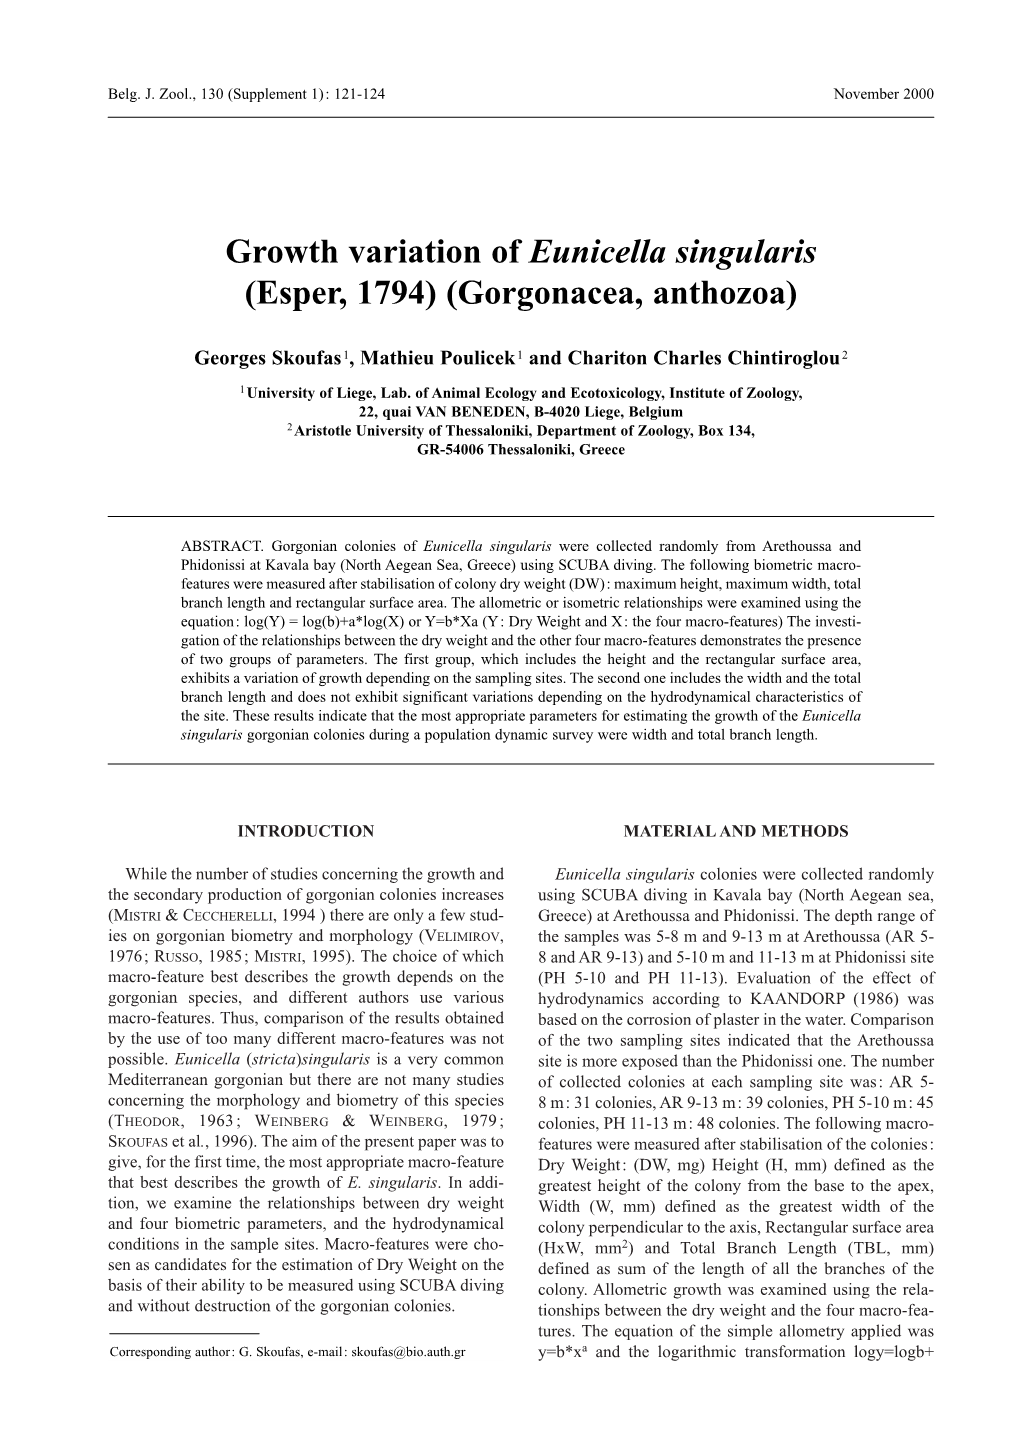 Growth Variation of Eunicella Singularis (Esper, 1794) (Gorgonacea, Anthozoa)